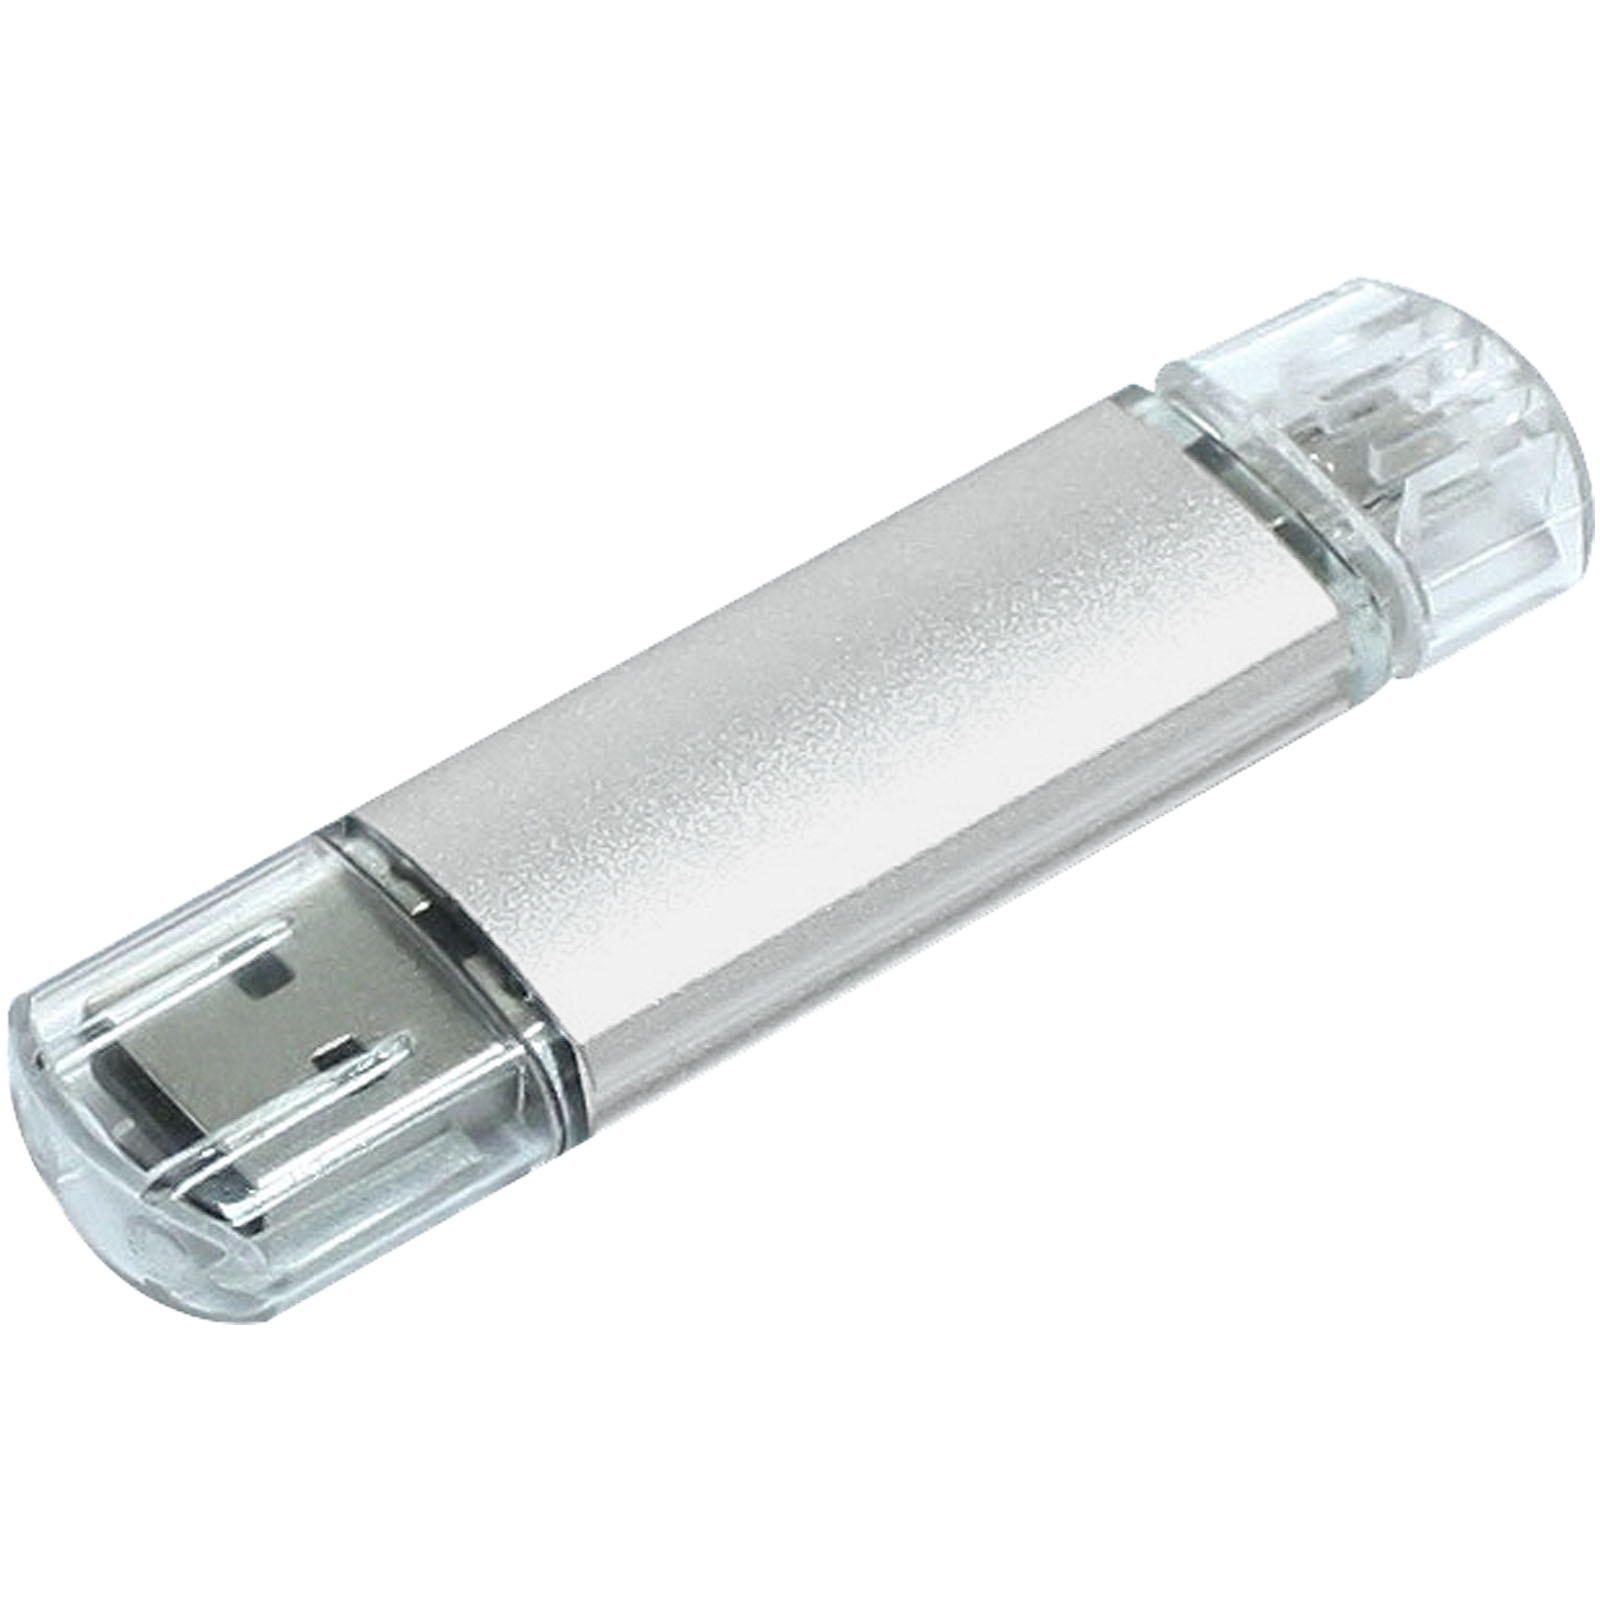 Clé USB OTG Micro USB en Aluminium - Saint-Martin-des-Champs - Zaprinta Belgique